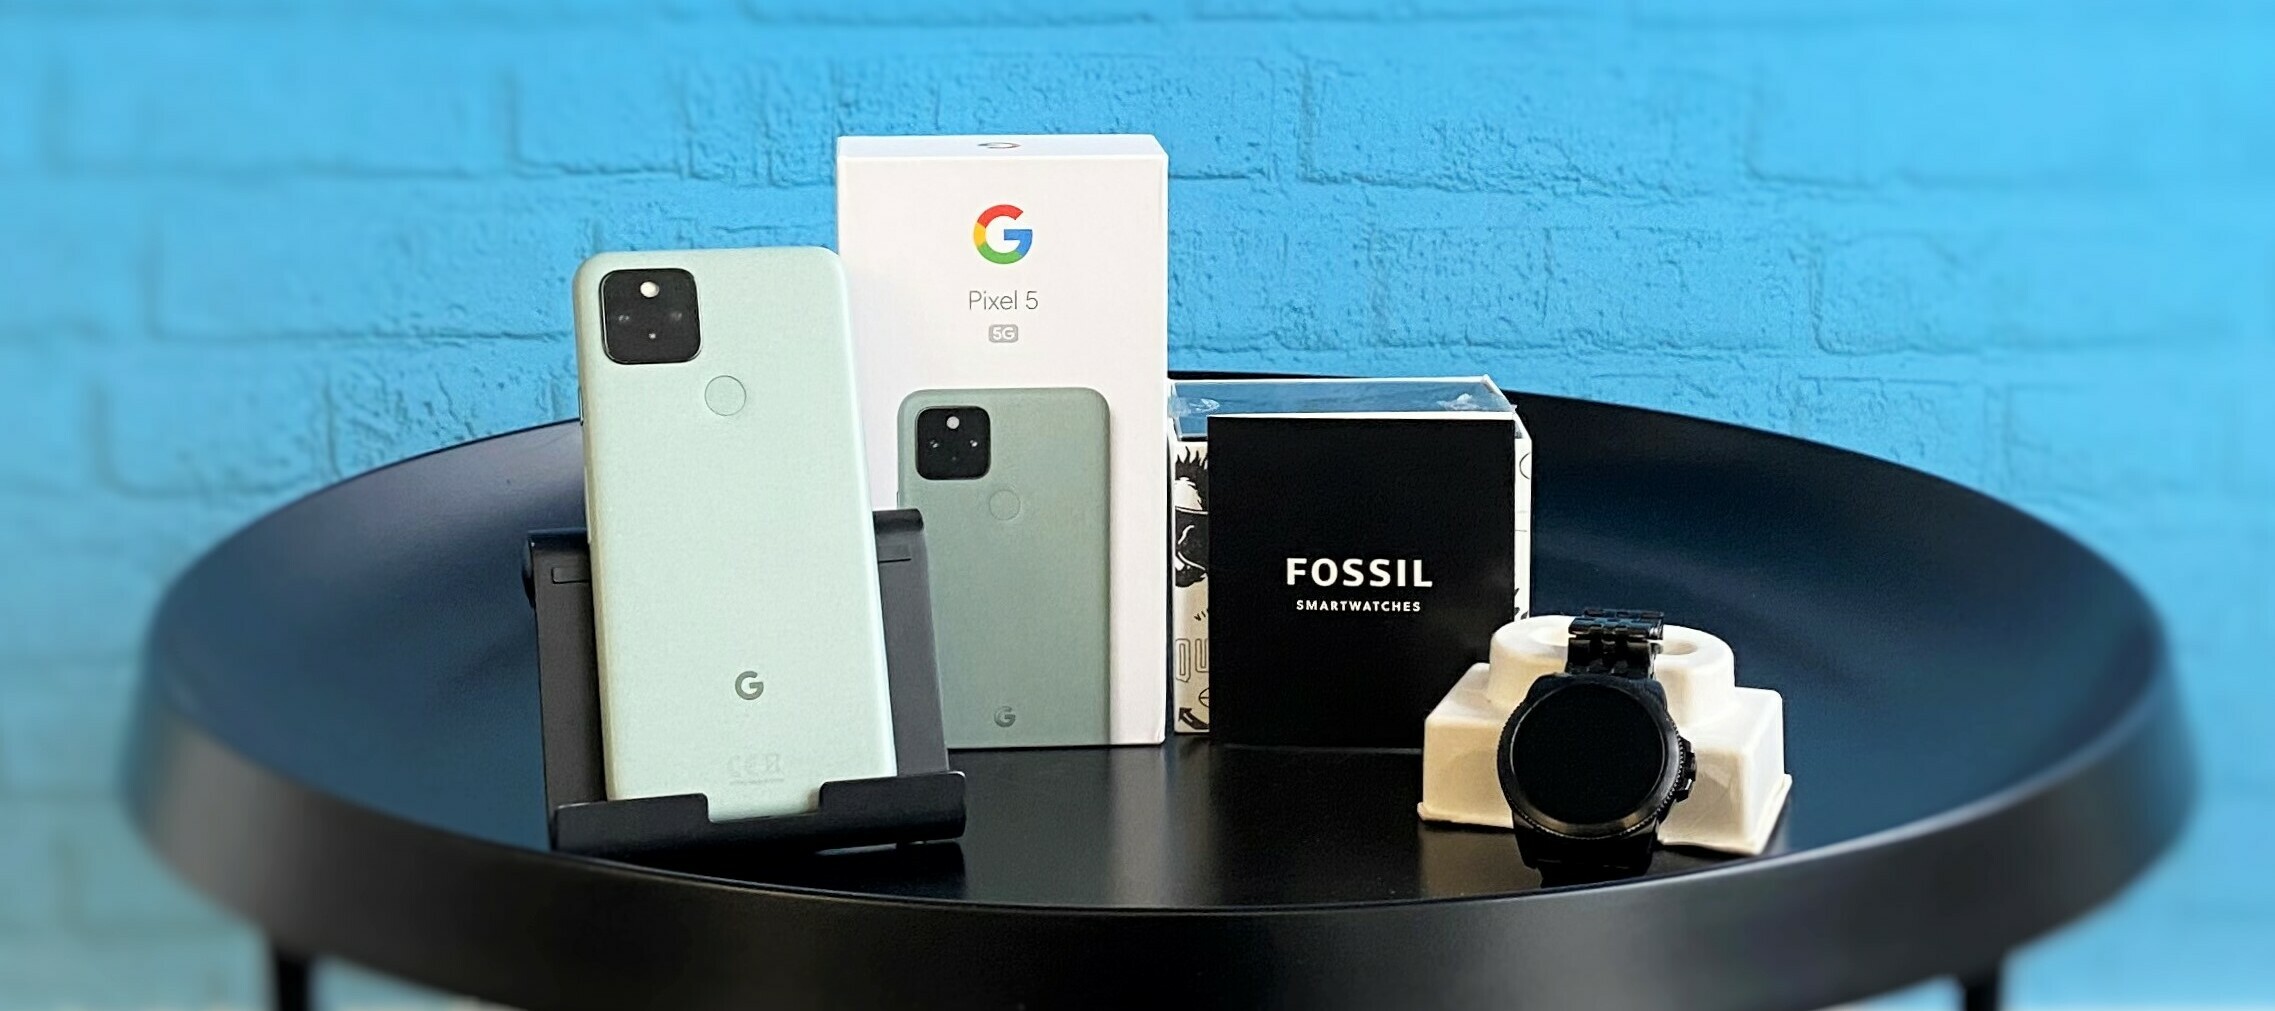 Google Pixel 5 5G Sorta Sage & Fossil Gen 5e - teste pures Android und eine schicke Smartwatch im Bundle!